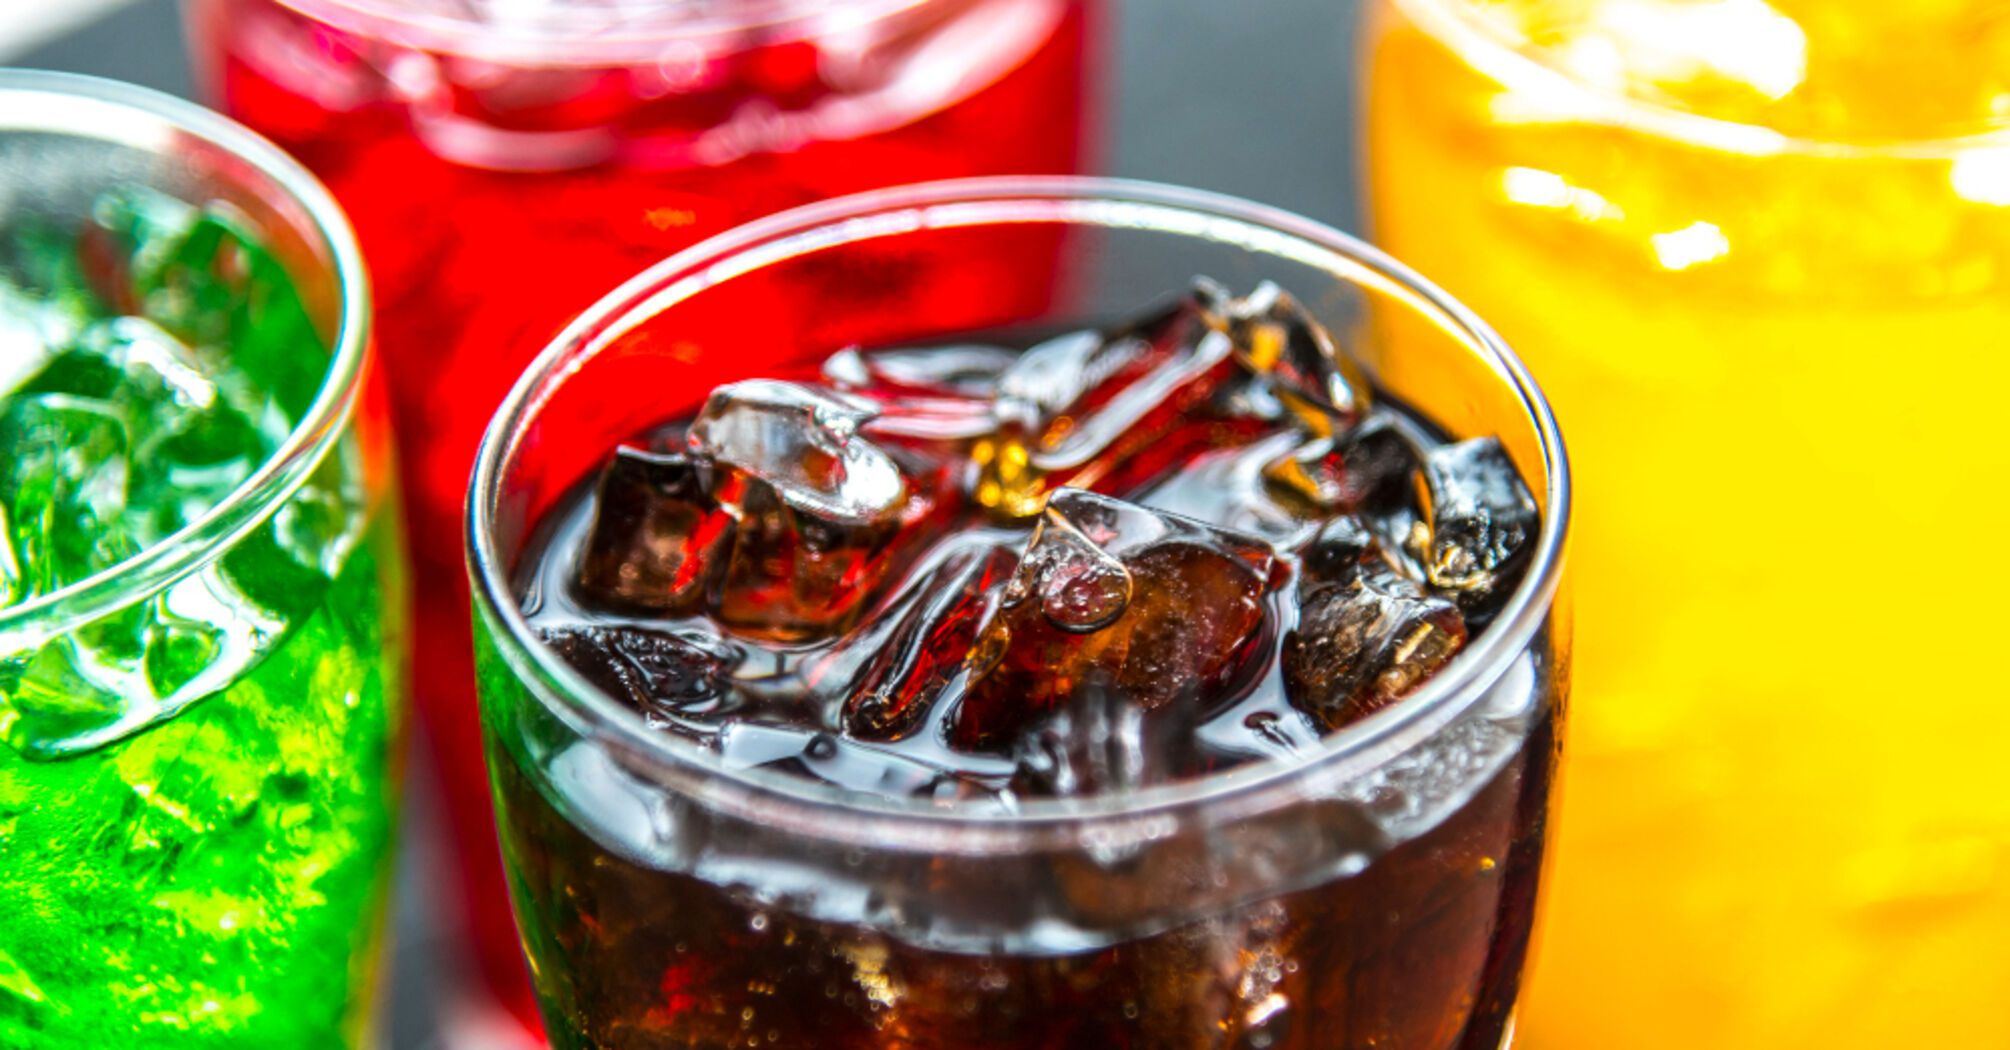 Как потребление сладких напитков влияет на здоровье и почему 'налог на сахар' нужен